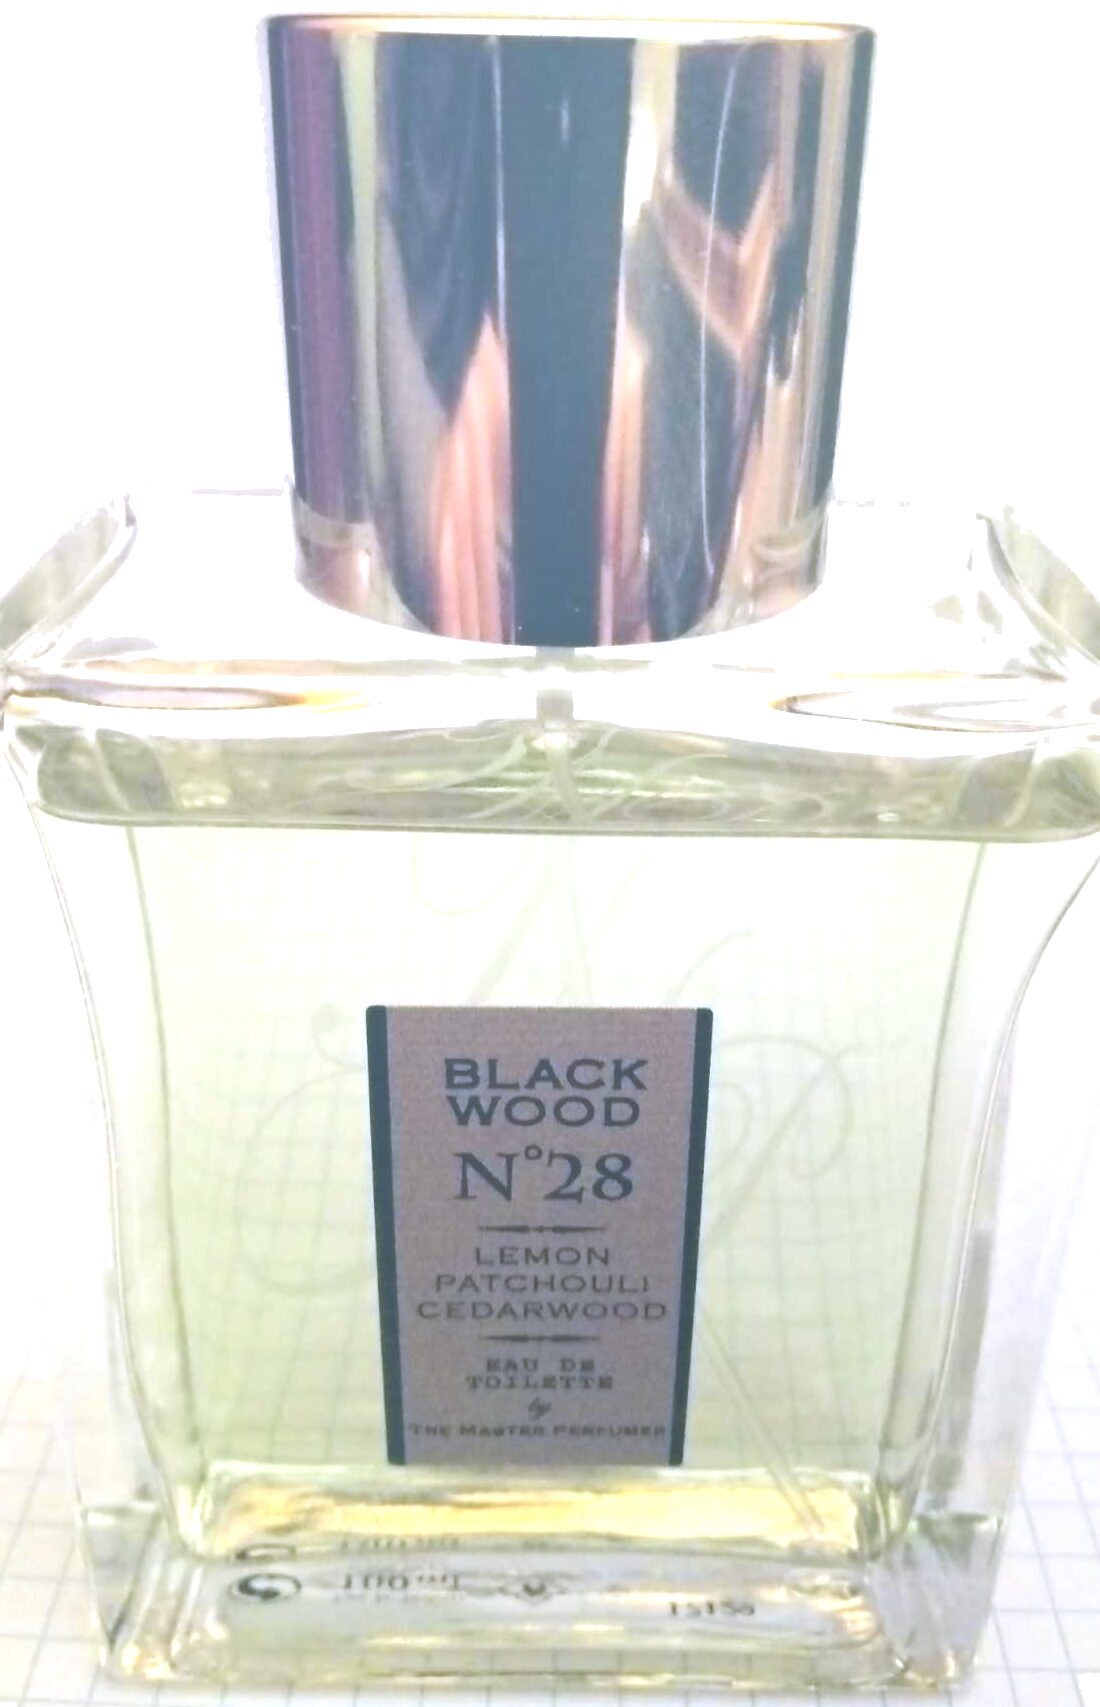 Black Wood No 28 - Product - en